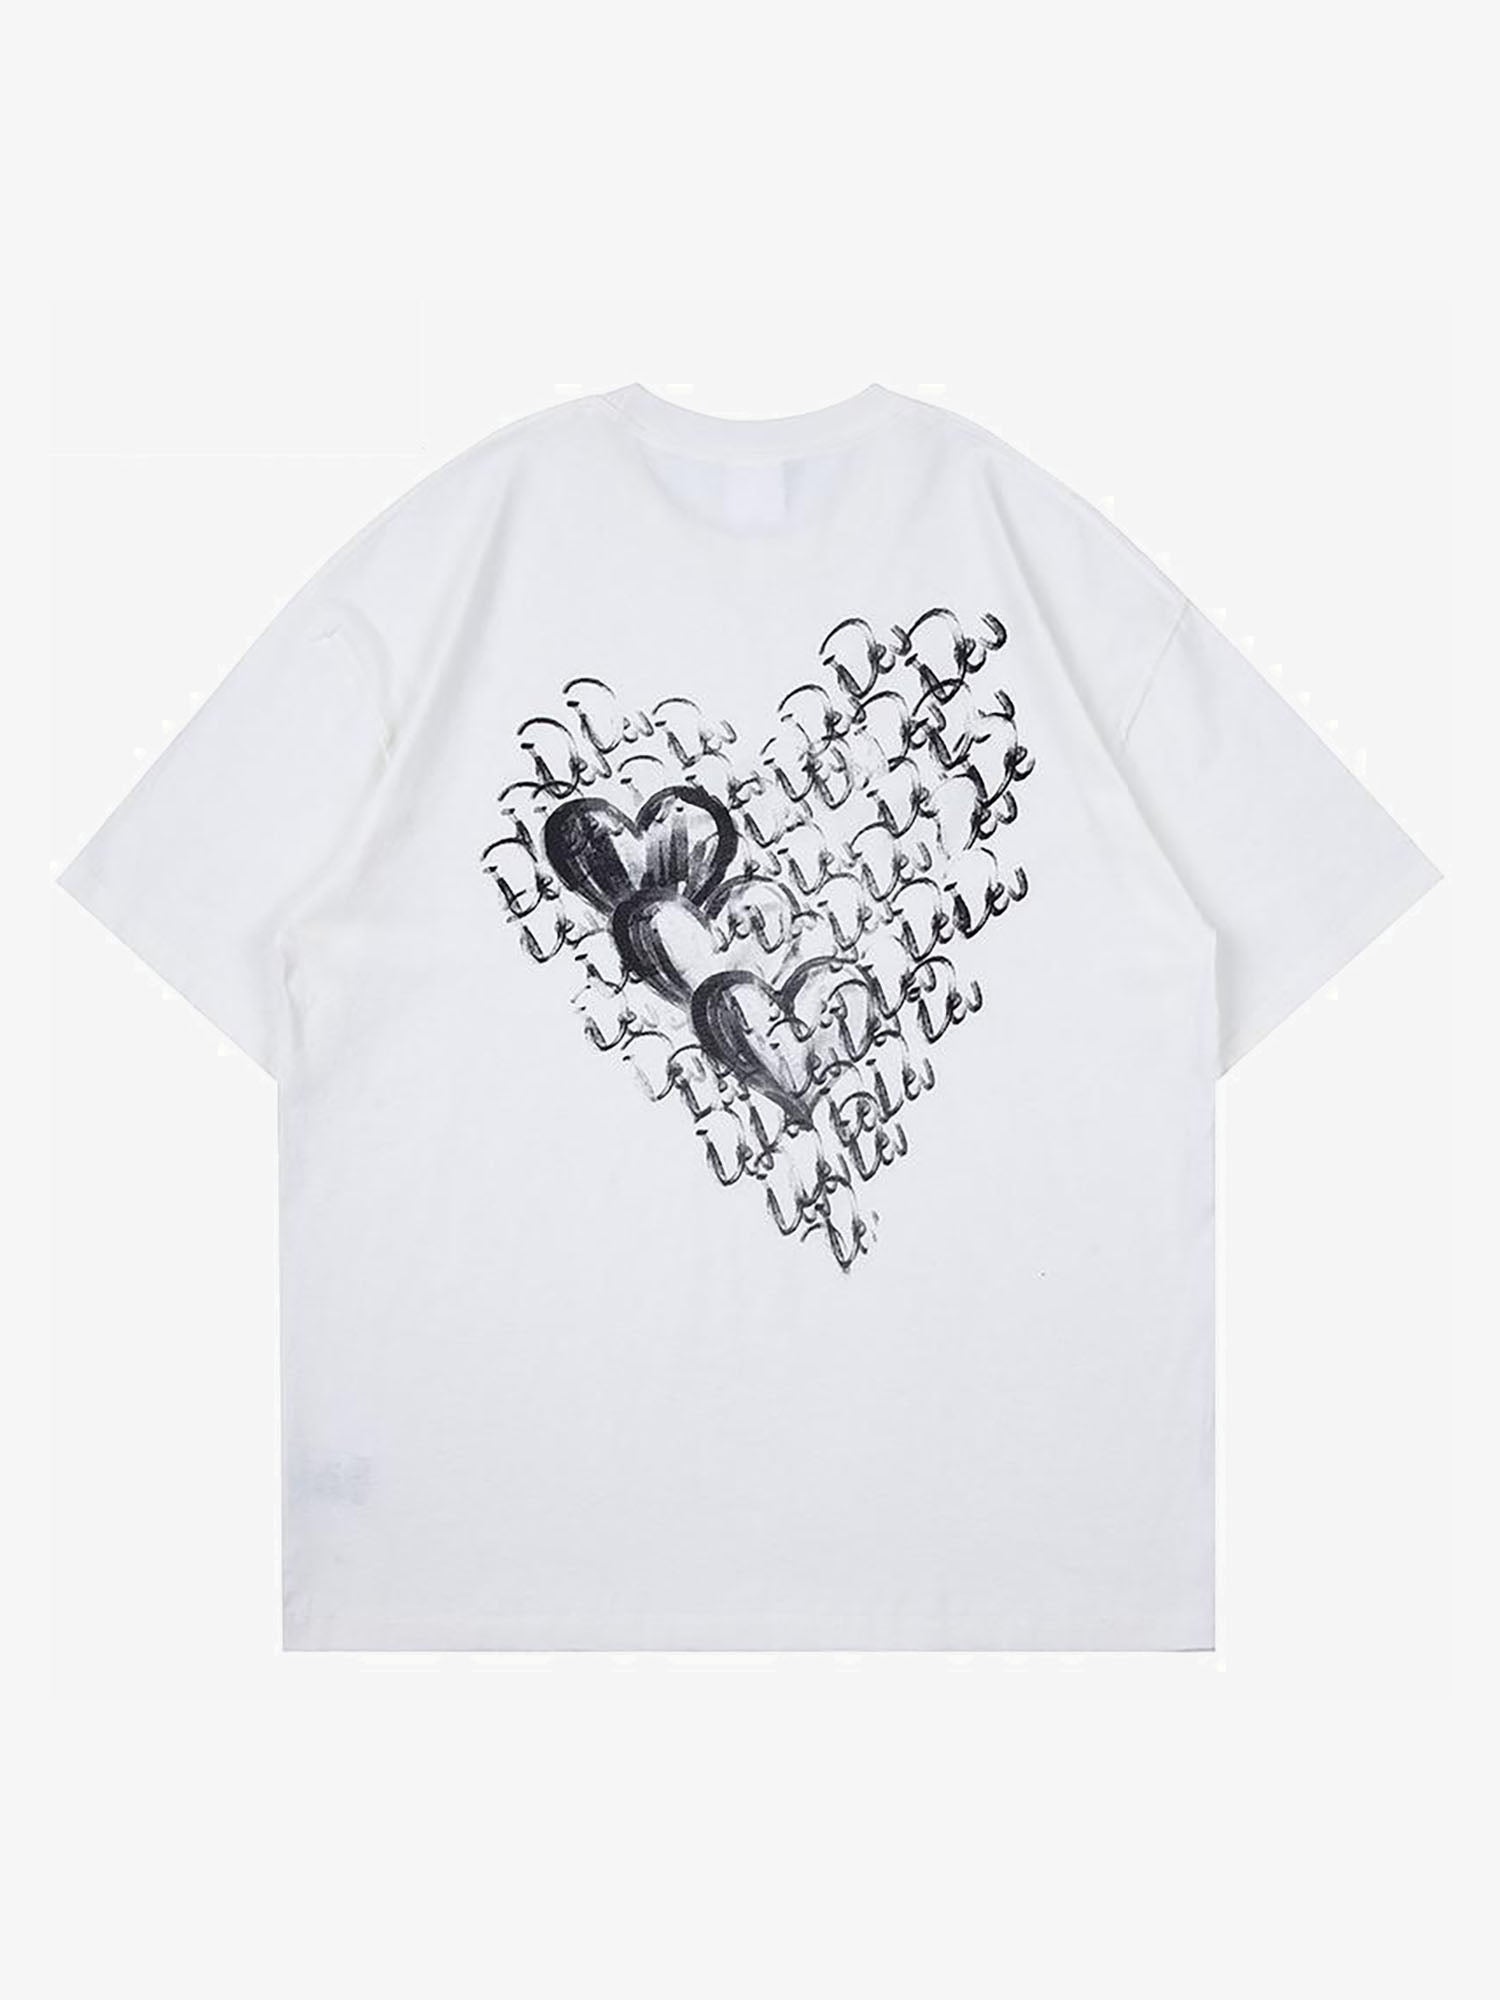 T-shirt à manches courtes imprimé lettre en forme de cœur Justnotag Painting